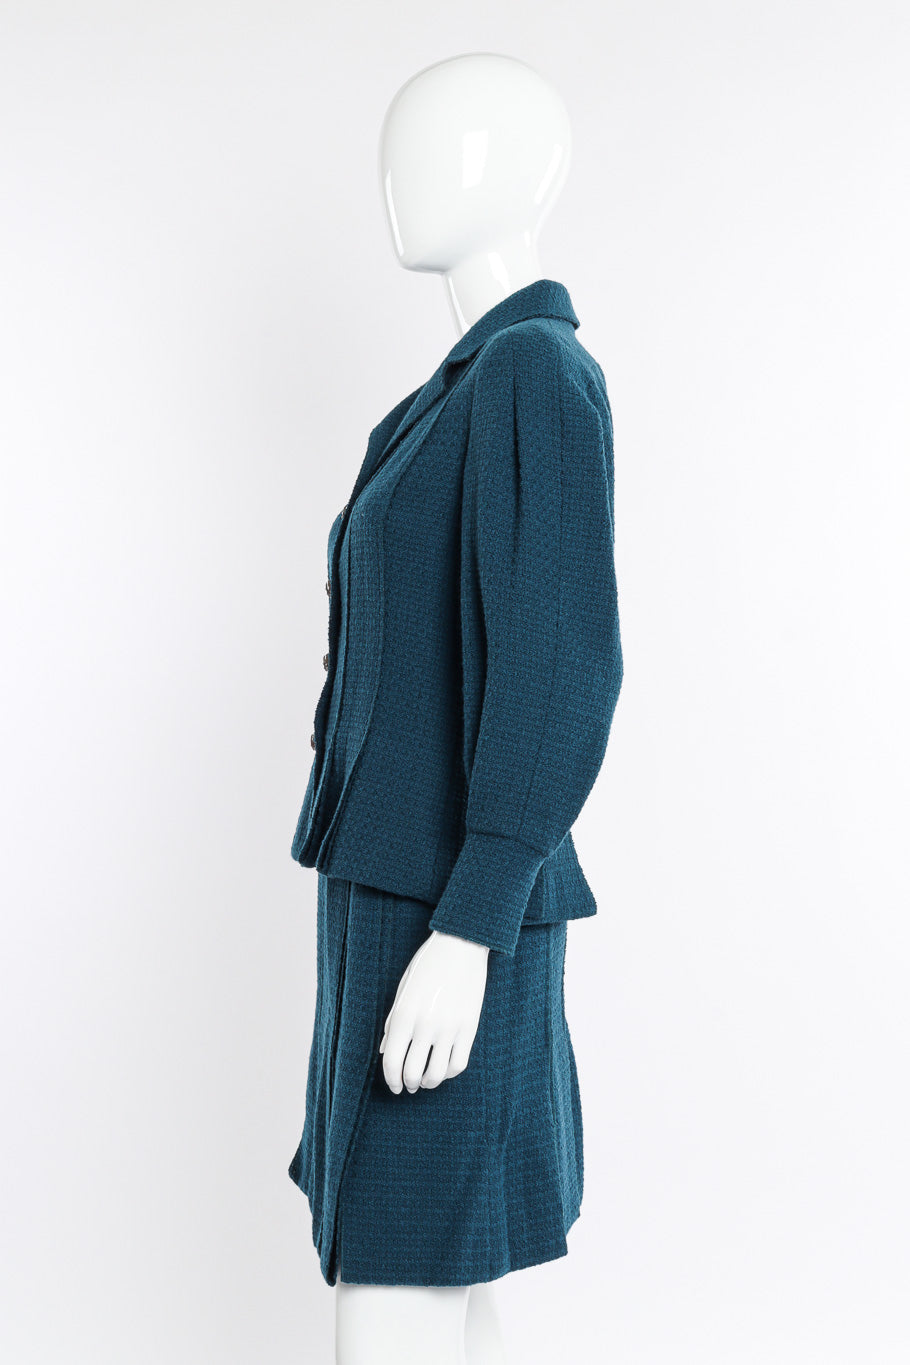 2008A Wool Carwash Hem Jacket & Skirt Set side view on mannequin @Recessla